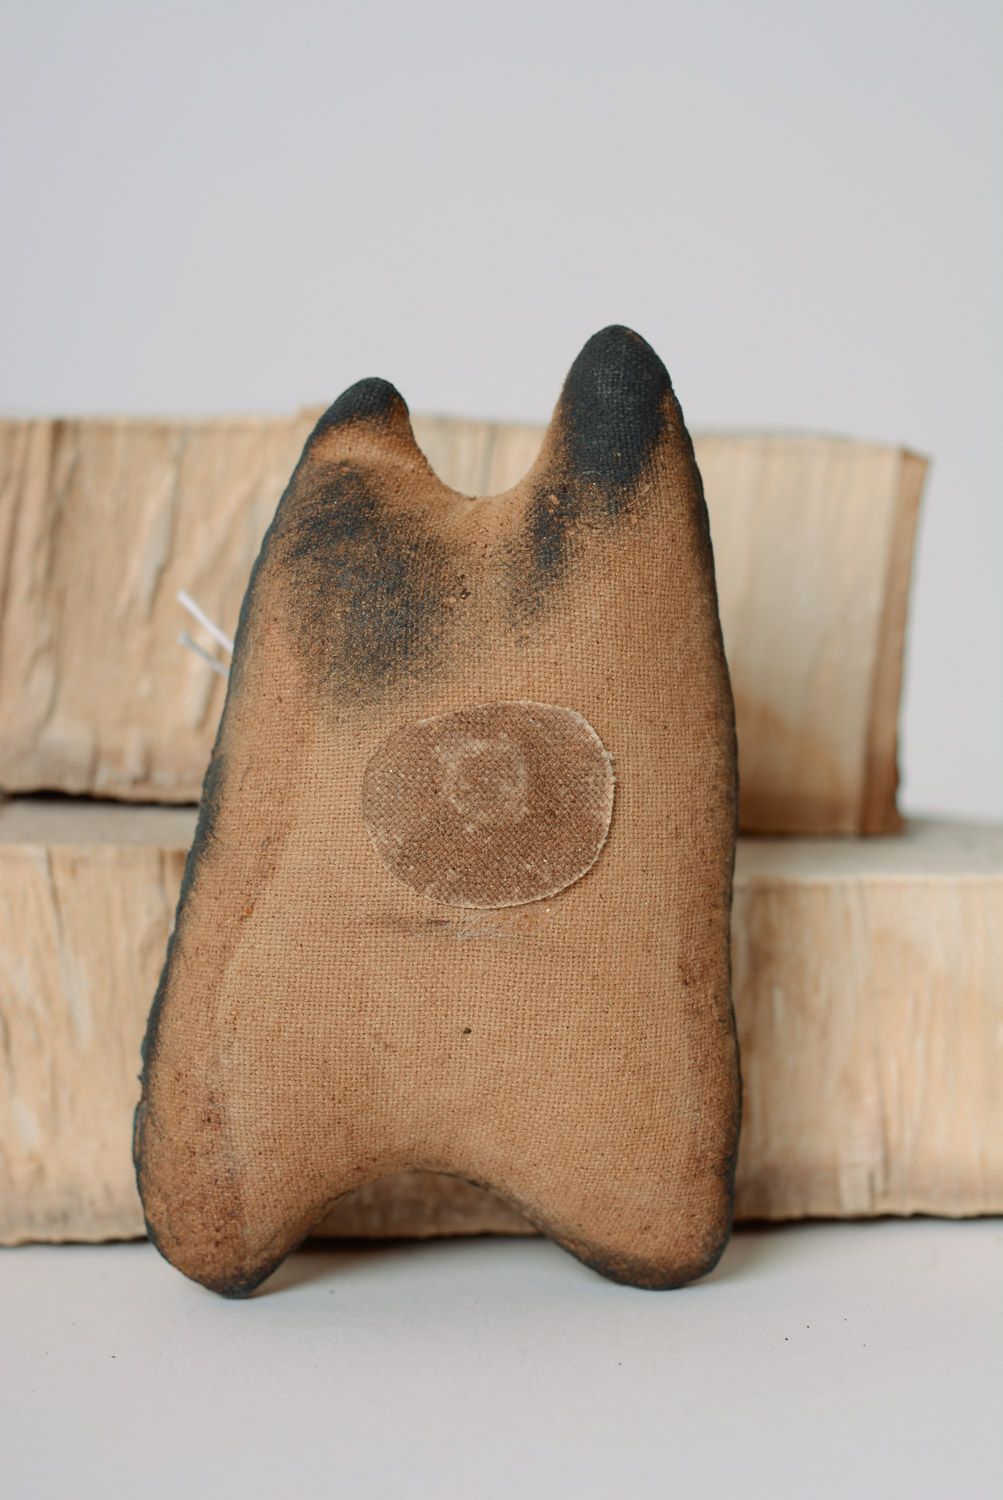 Magnet pour frigo tissu de coton en forme de chat fait main aromatisé de café photo 4